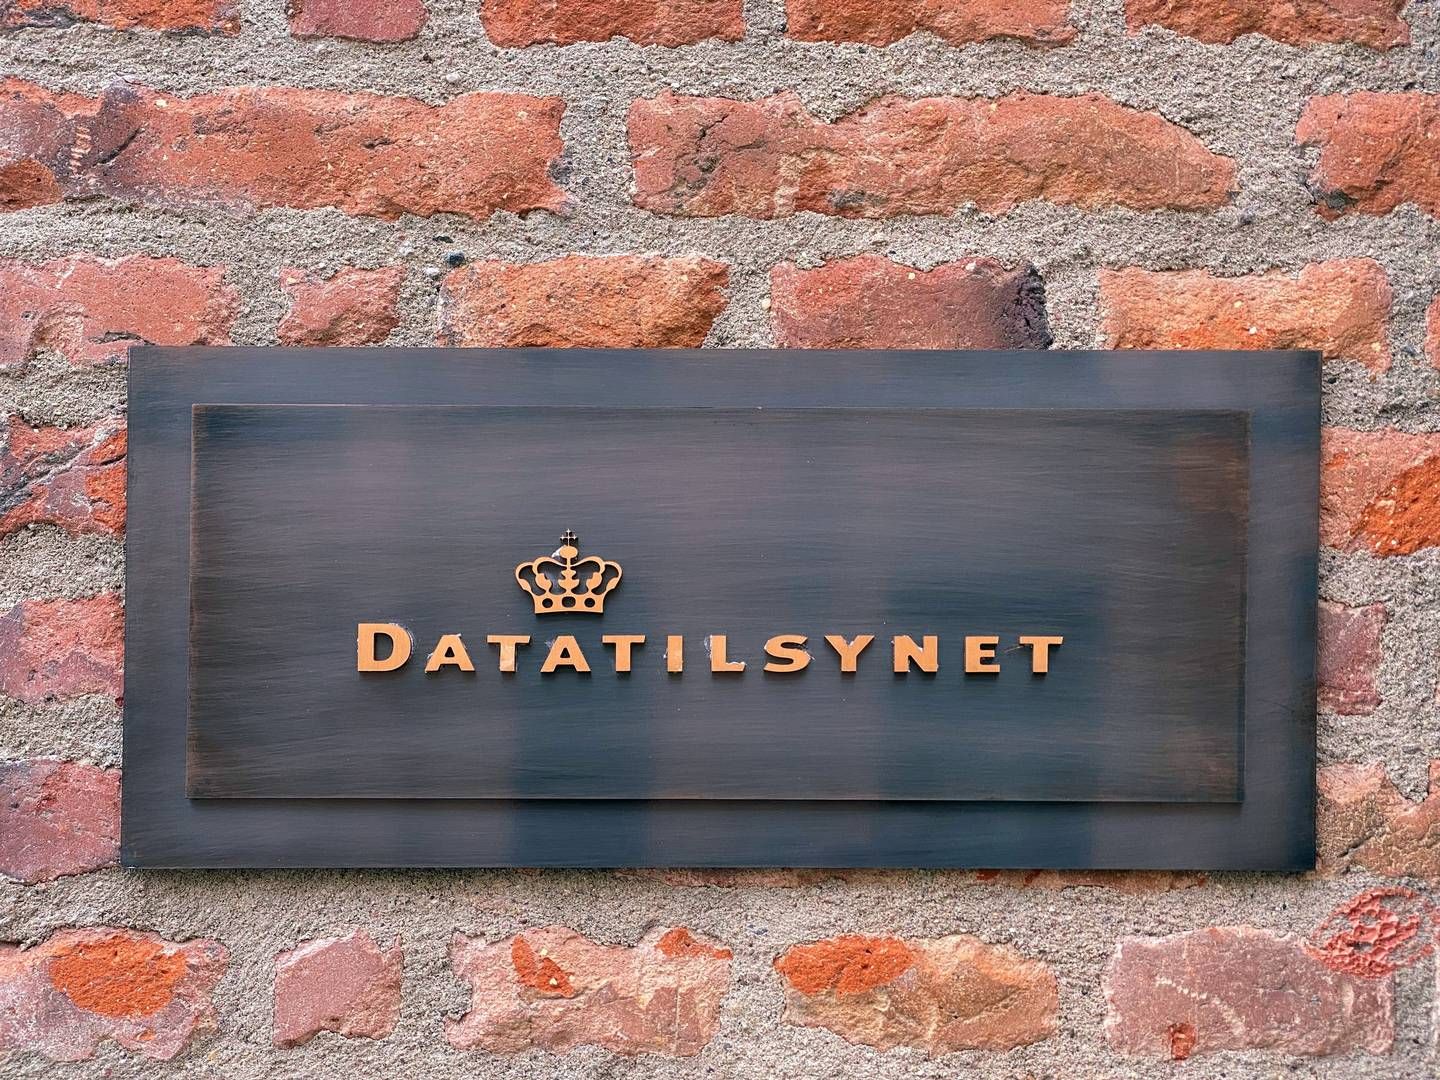 På baggrund af et spørgsmål fra Region Midtjylland har Datatilsynet vurderet, at co-locations ikke skal anses som databehandler. | Foto: Datatilsynet/pr